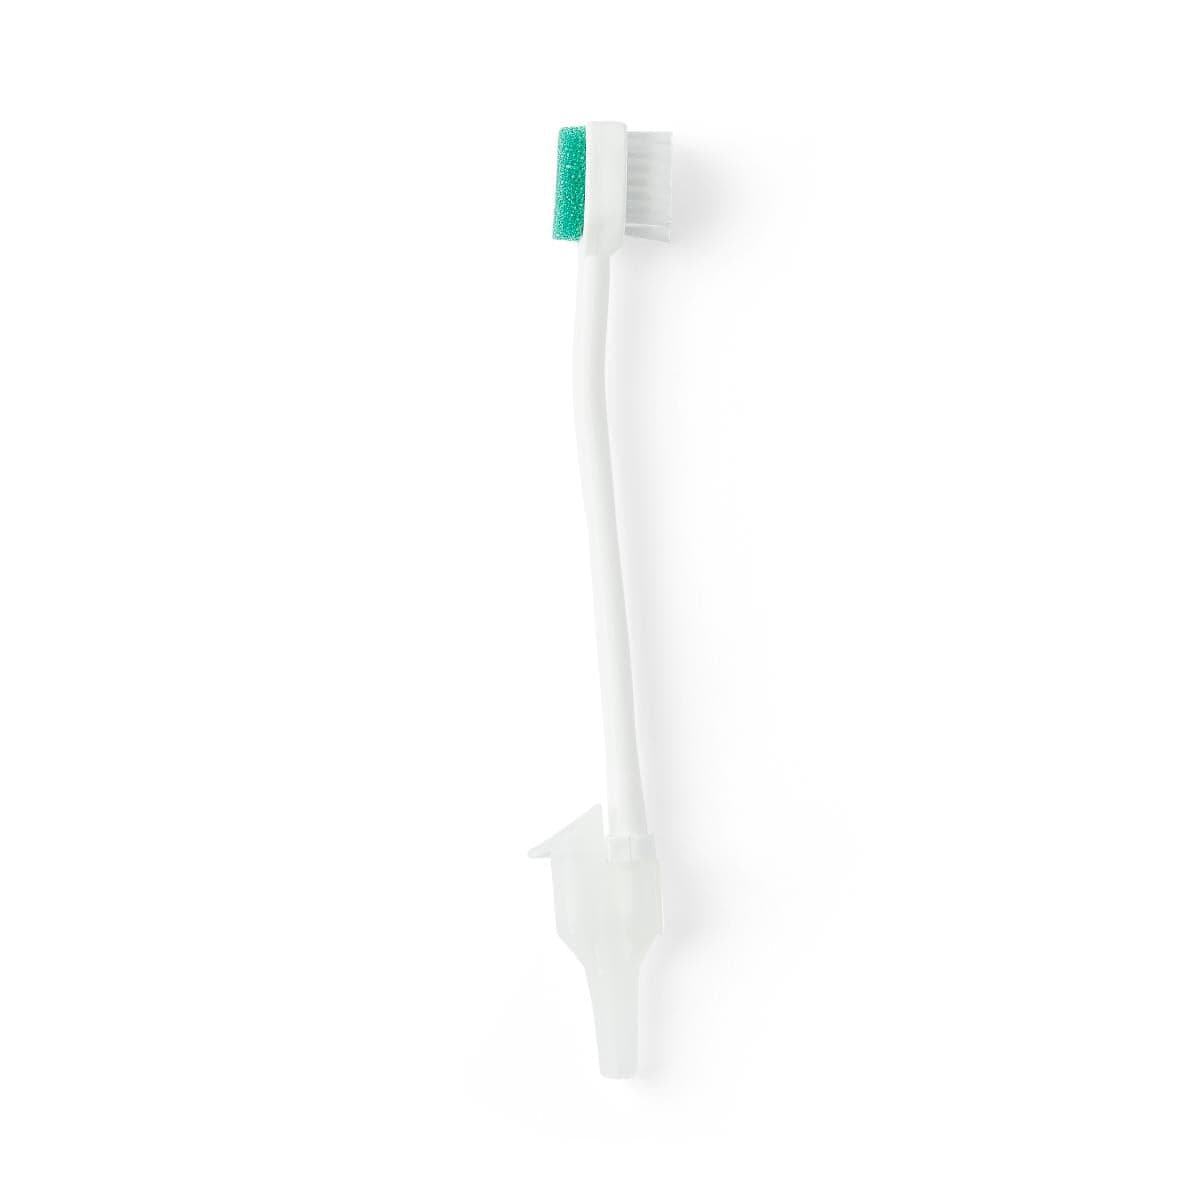 Medline Medline Suction Toothbrush